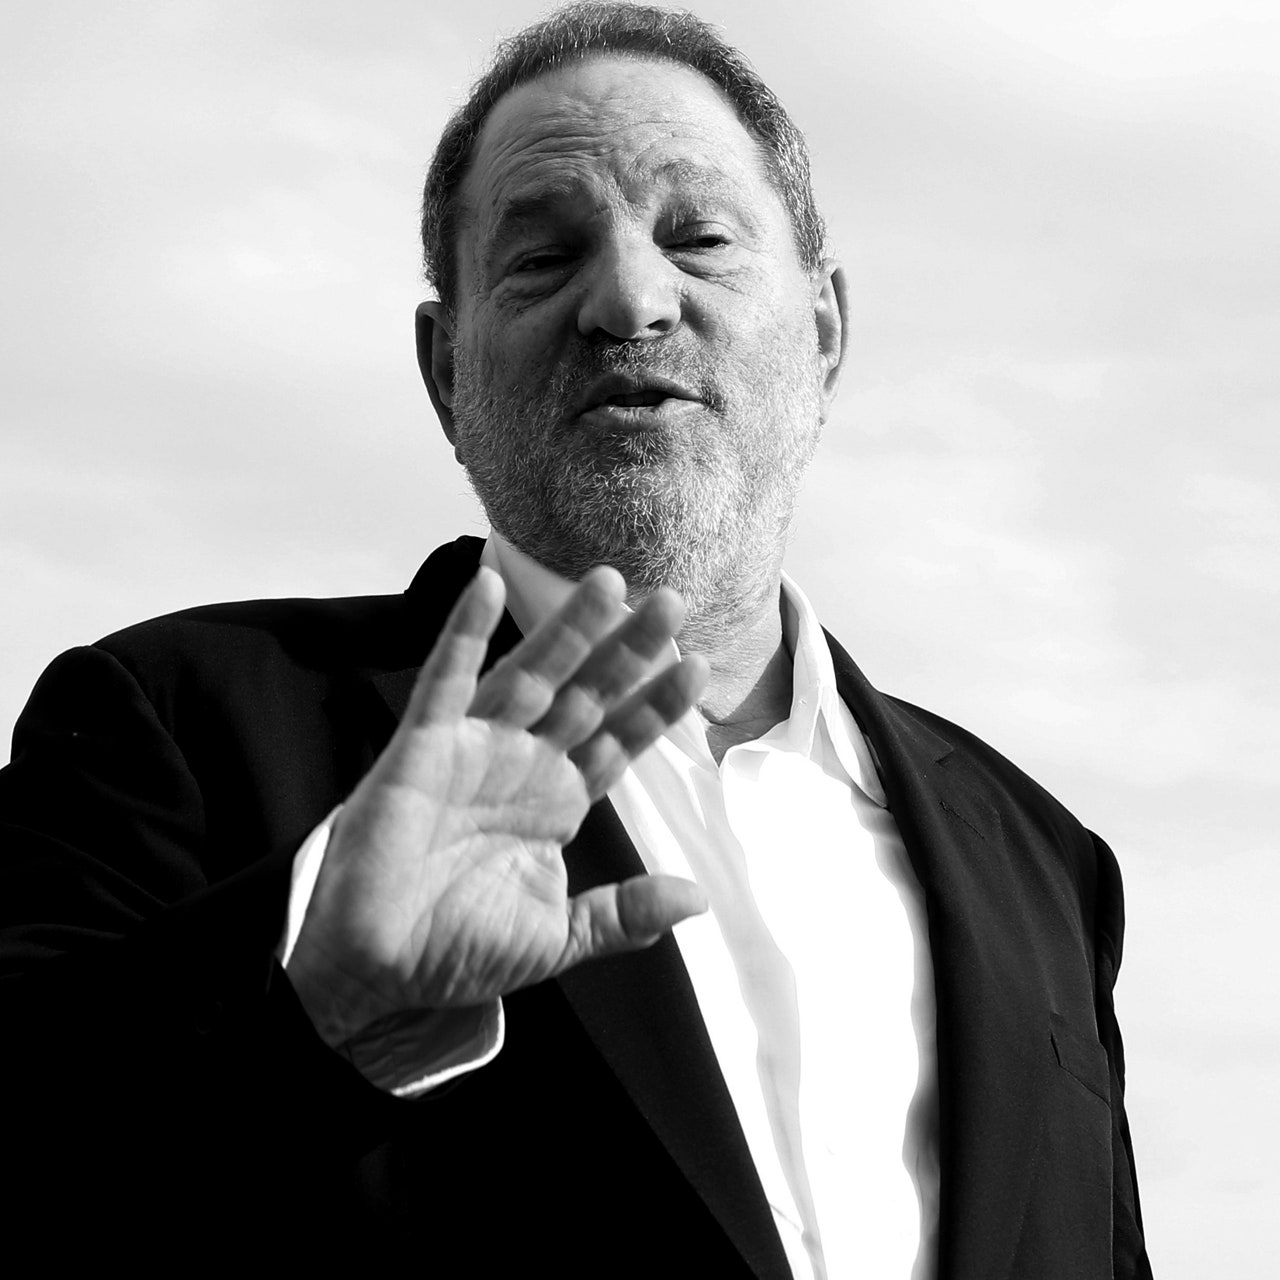 Harvey Weinstein: Everyone knew